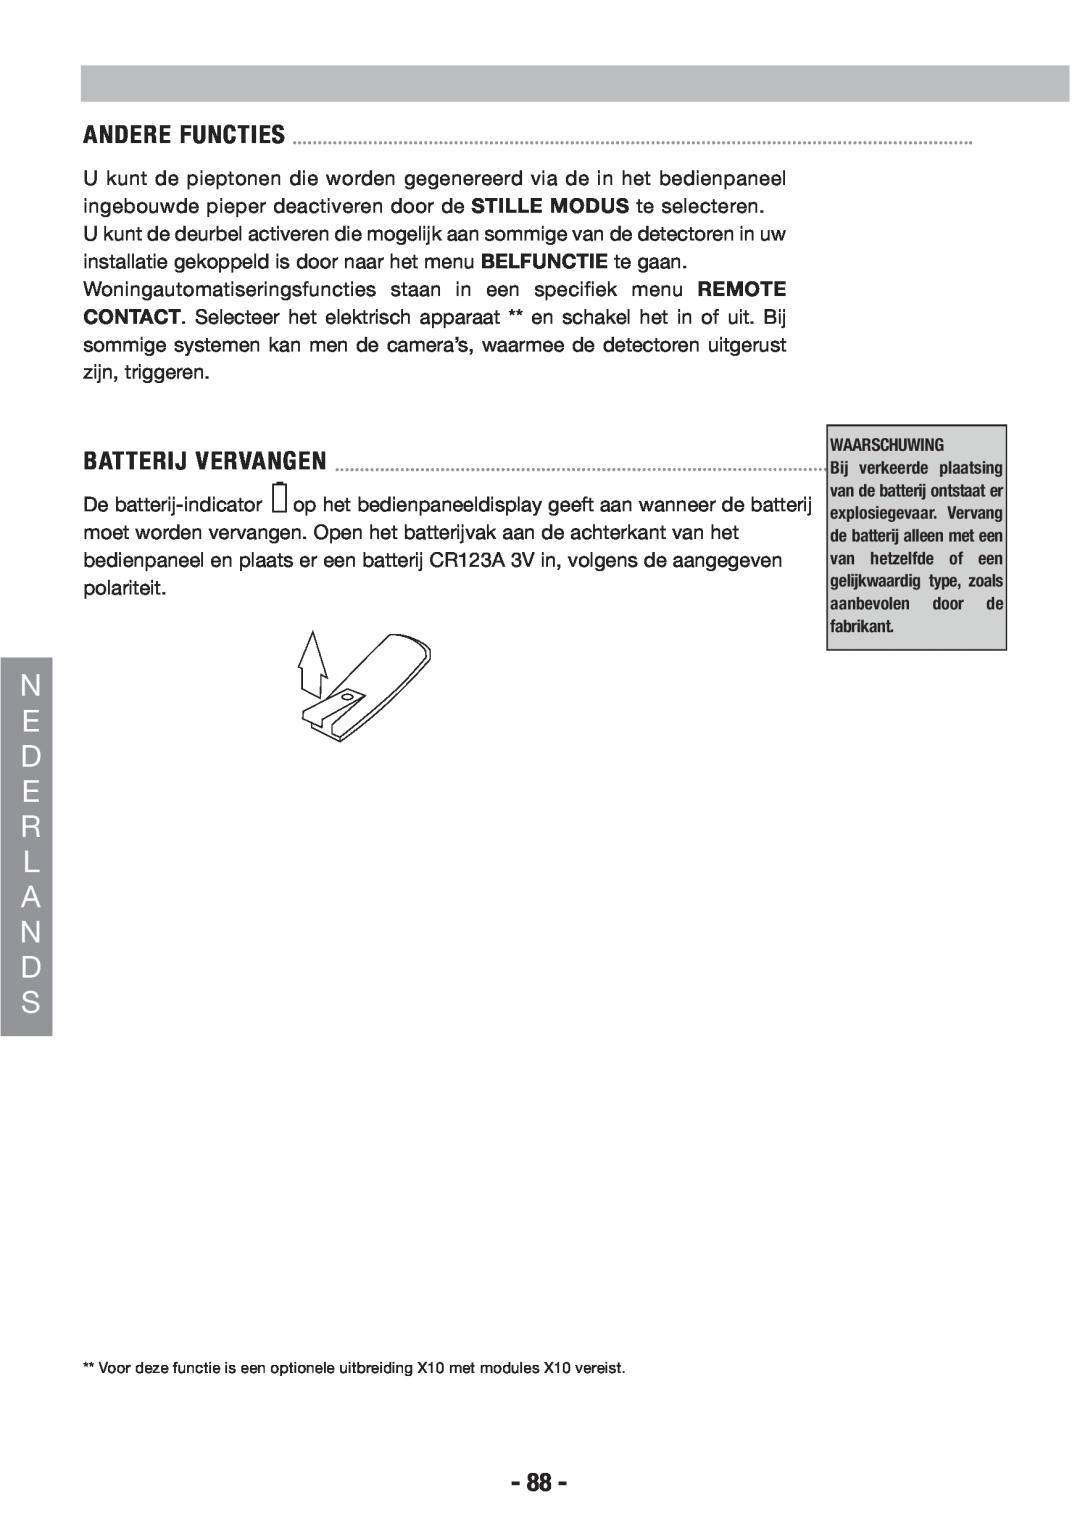 Honeywell EKZ008200B user manual N E D E R L A N D S, Andere Functies, Batterij Vervangen, Waarschuwing 